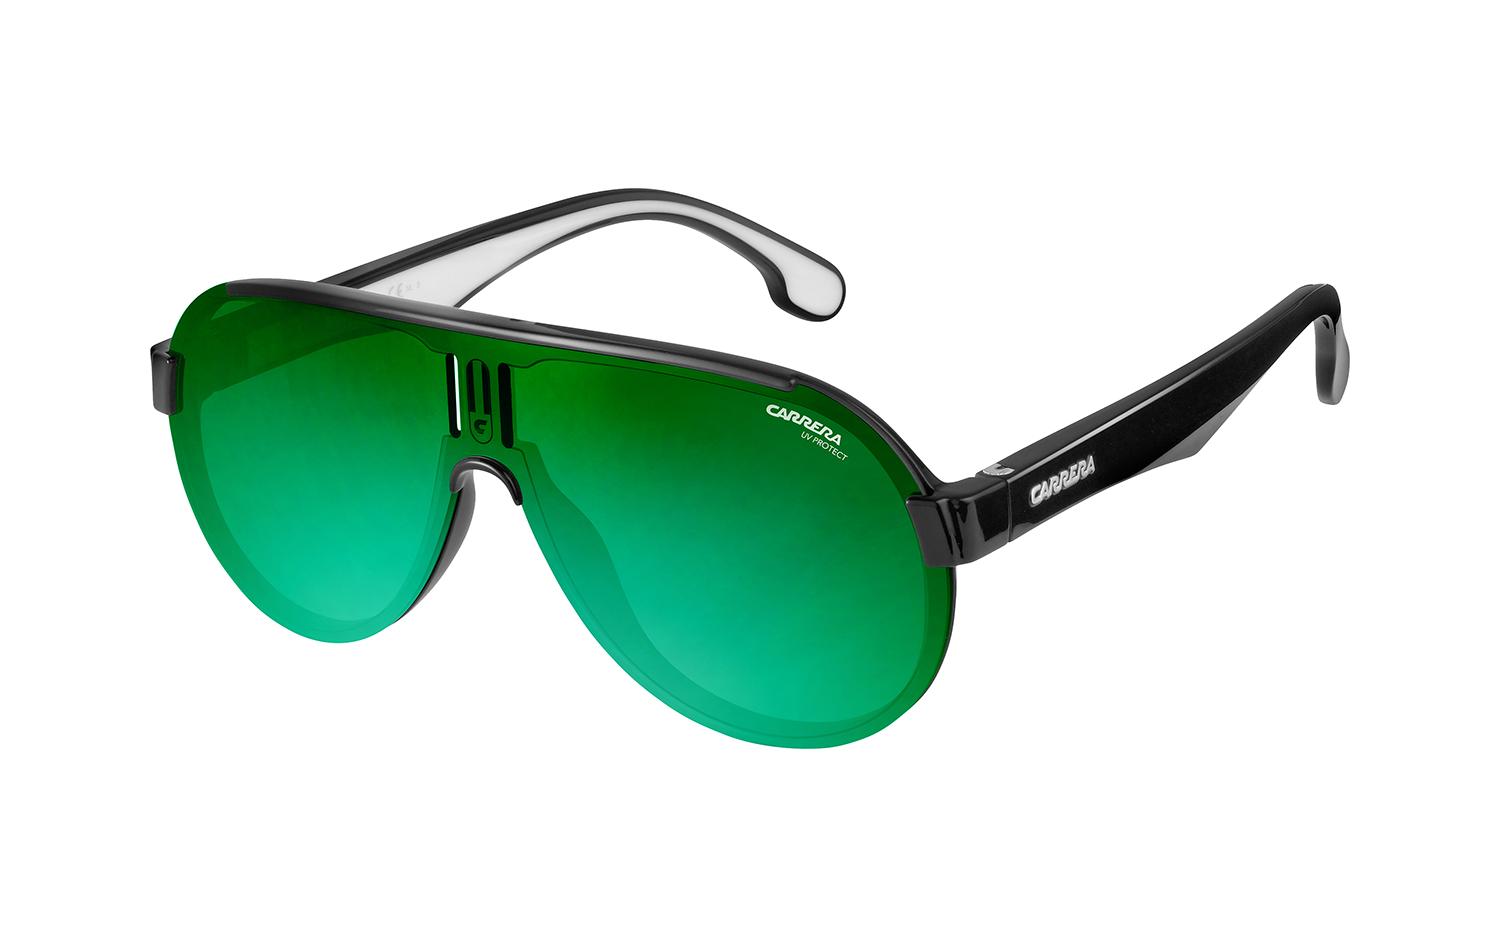 Мужские зеленые очки солнцезащитные. Очки Carrera 8041-s 807. Очки Carrera 4013-s 807. Очки Carrera 8056/s. Очки Carrera Sport 70.